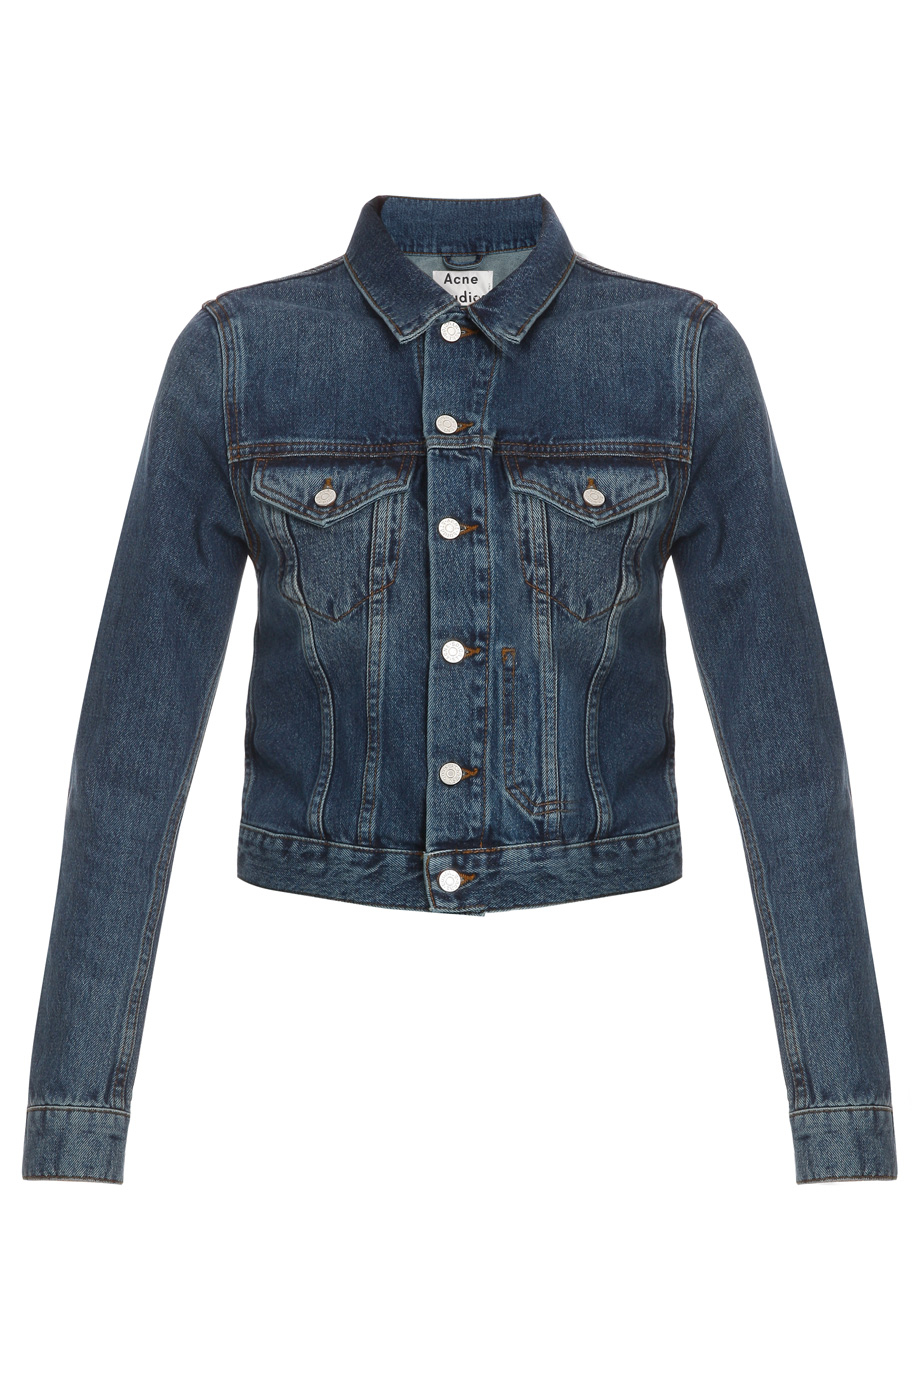 Lyst - Acne Studios Tag Vintage Denim Jacket in Blue